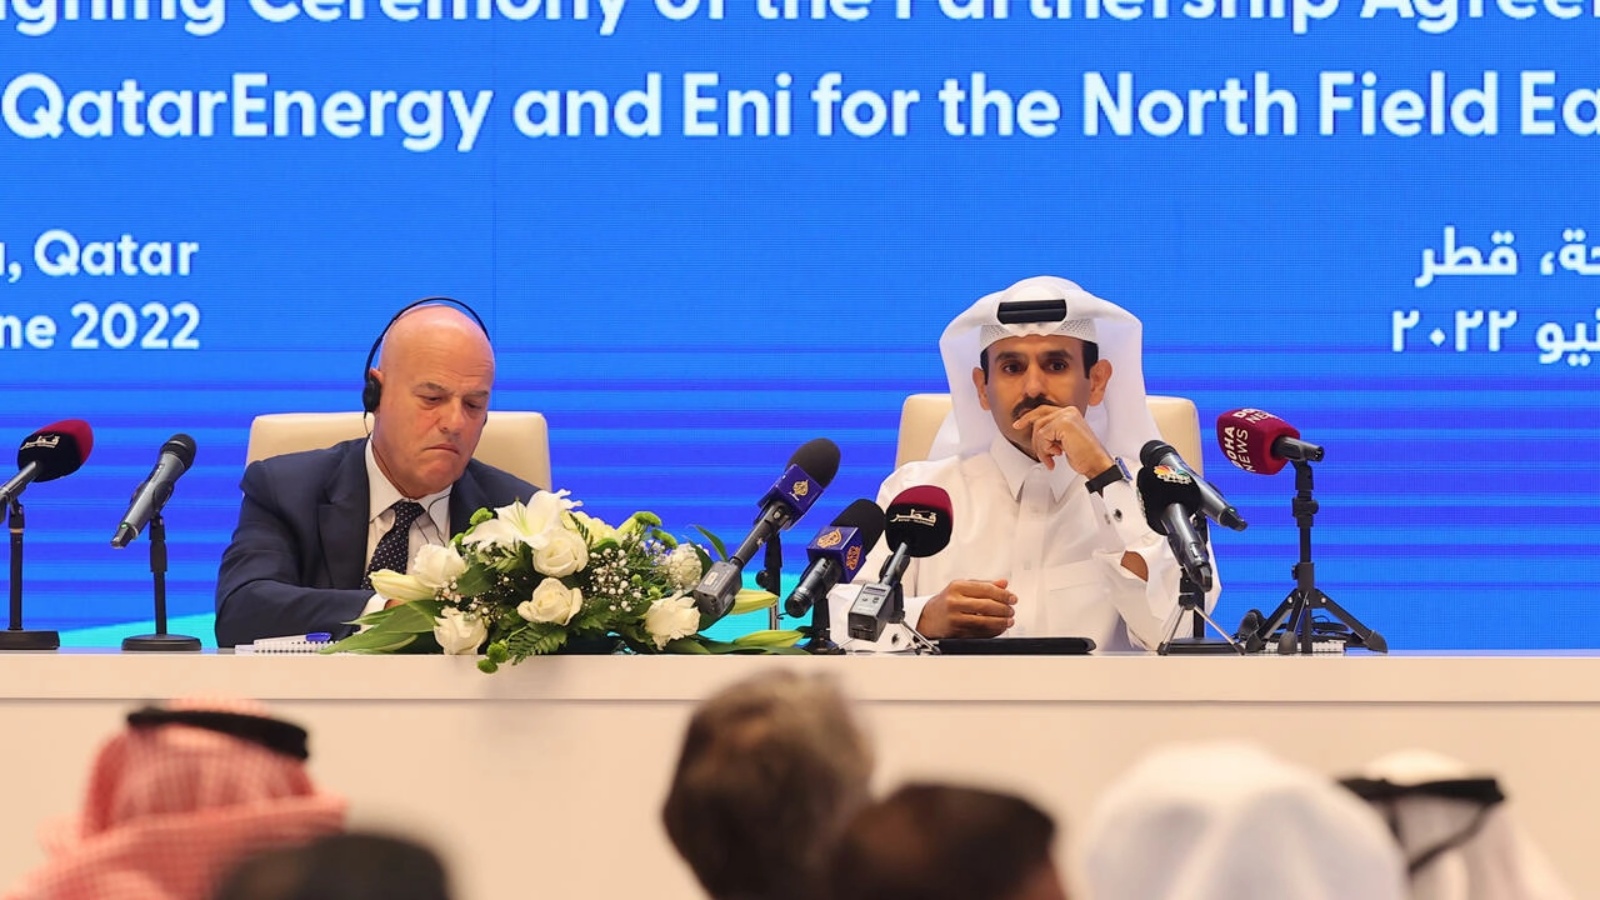 وزير الطاقة القطري ونائب رئيس مجلس إدارة شركة قطر للغاز سعد شريدة الكعبي (يمين) وكلاوديو ديكالتزي رئيس مجلس إدارة شركة النفط الإيطالية إيني خلال مراسم توقيع عقد في مقر المجموعة القطرية في الدوحة في 19 يونيو 2022